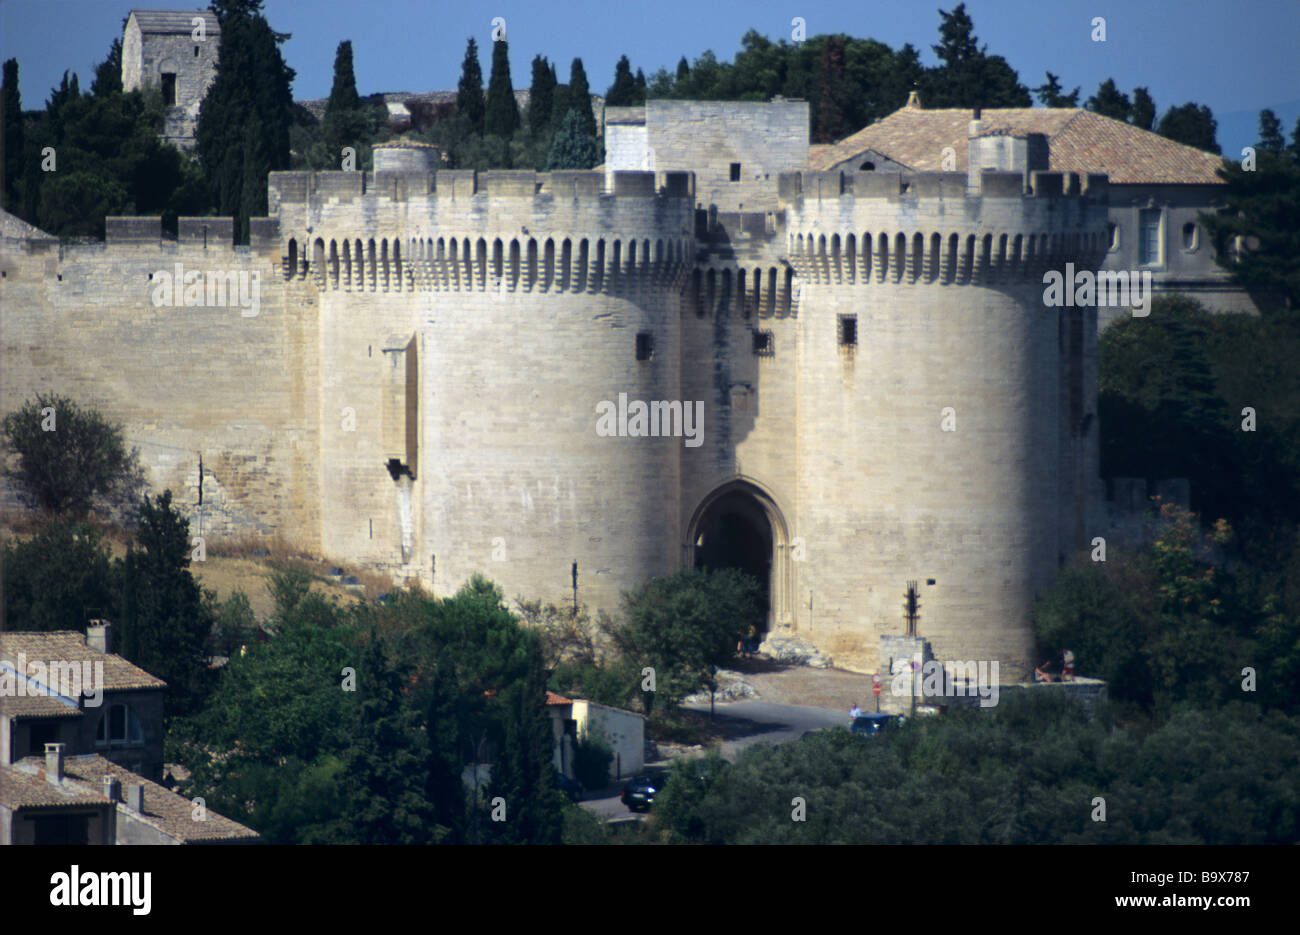 Twin-Eingang oder Wehrtürme der mittelalterlichen Festung von Saint André (c14th), Villeneuve-Les-Avignon, Département Gard, Frankreich Stockfoto